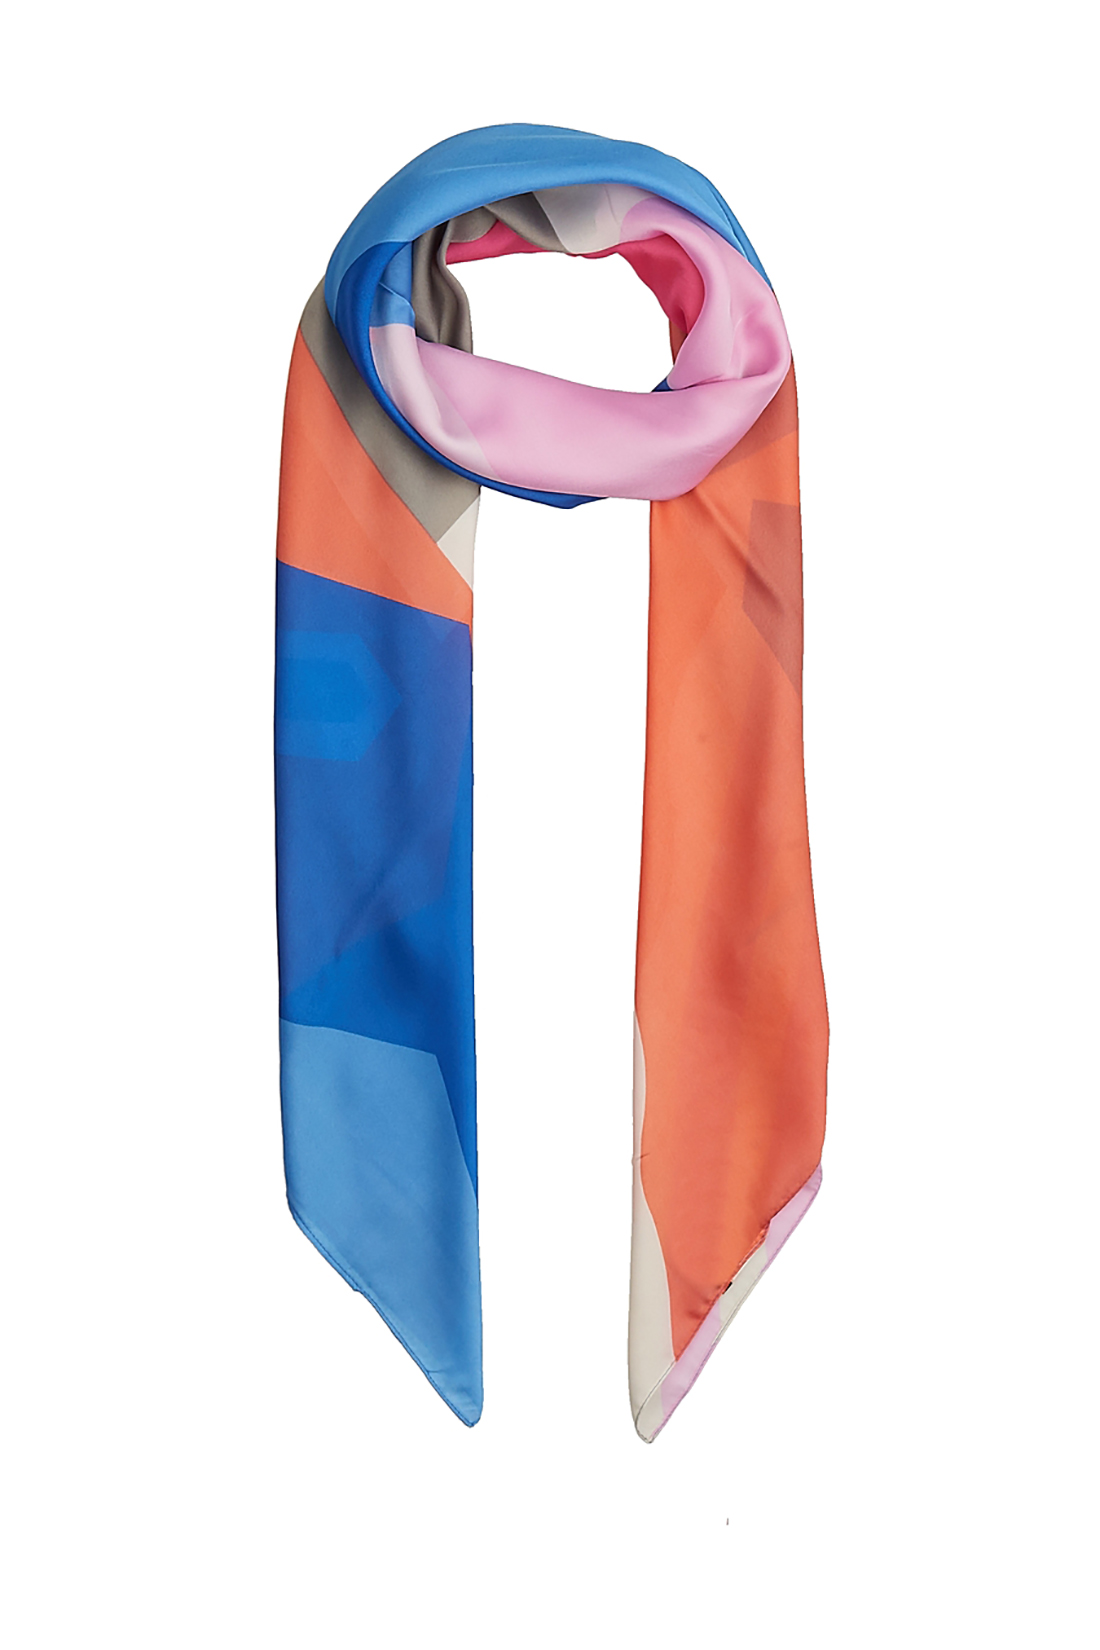 Яркий шёлковый шарф (арт. baon B358046), размер Без/раз, цвет multicolor#многоцветный Яркий шёлковый шарф (арт. baon B358046) - фото 1